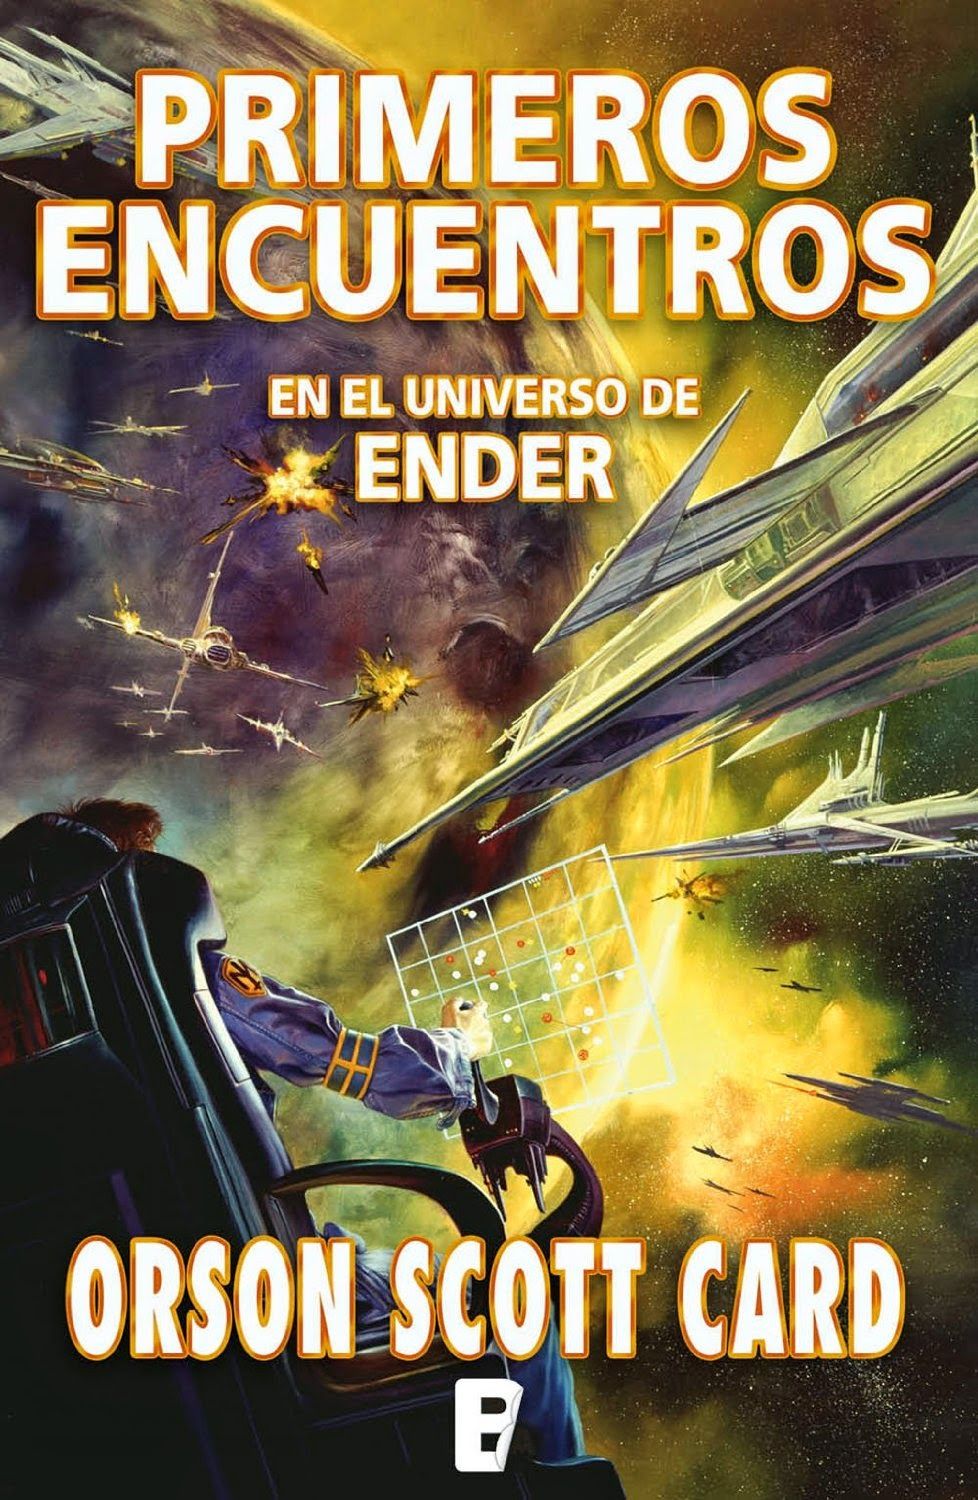 “Primeros encuentros en el universo de Ender” (Orson Scott Card, Nova)